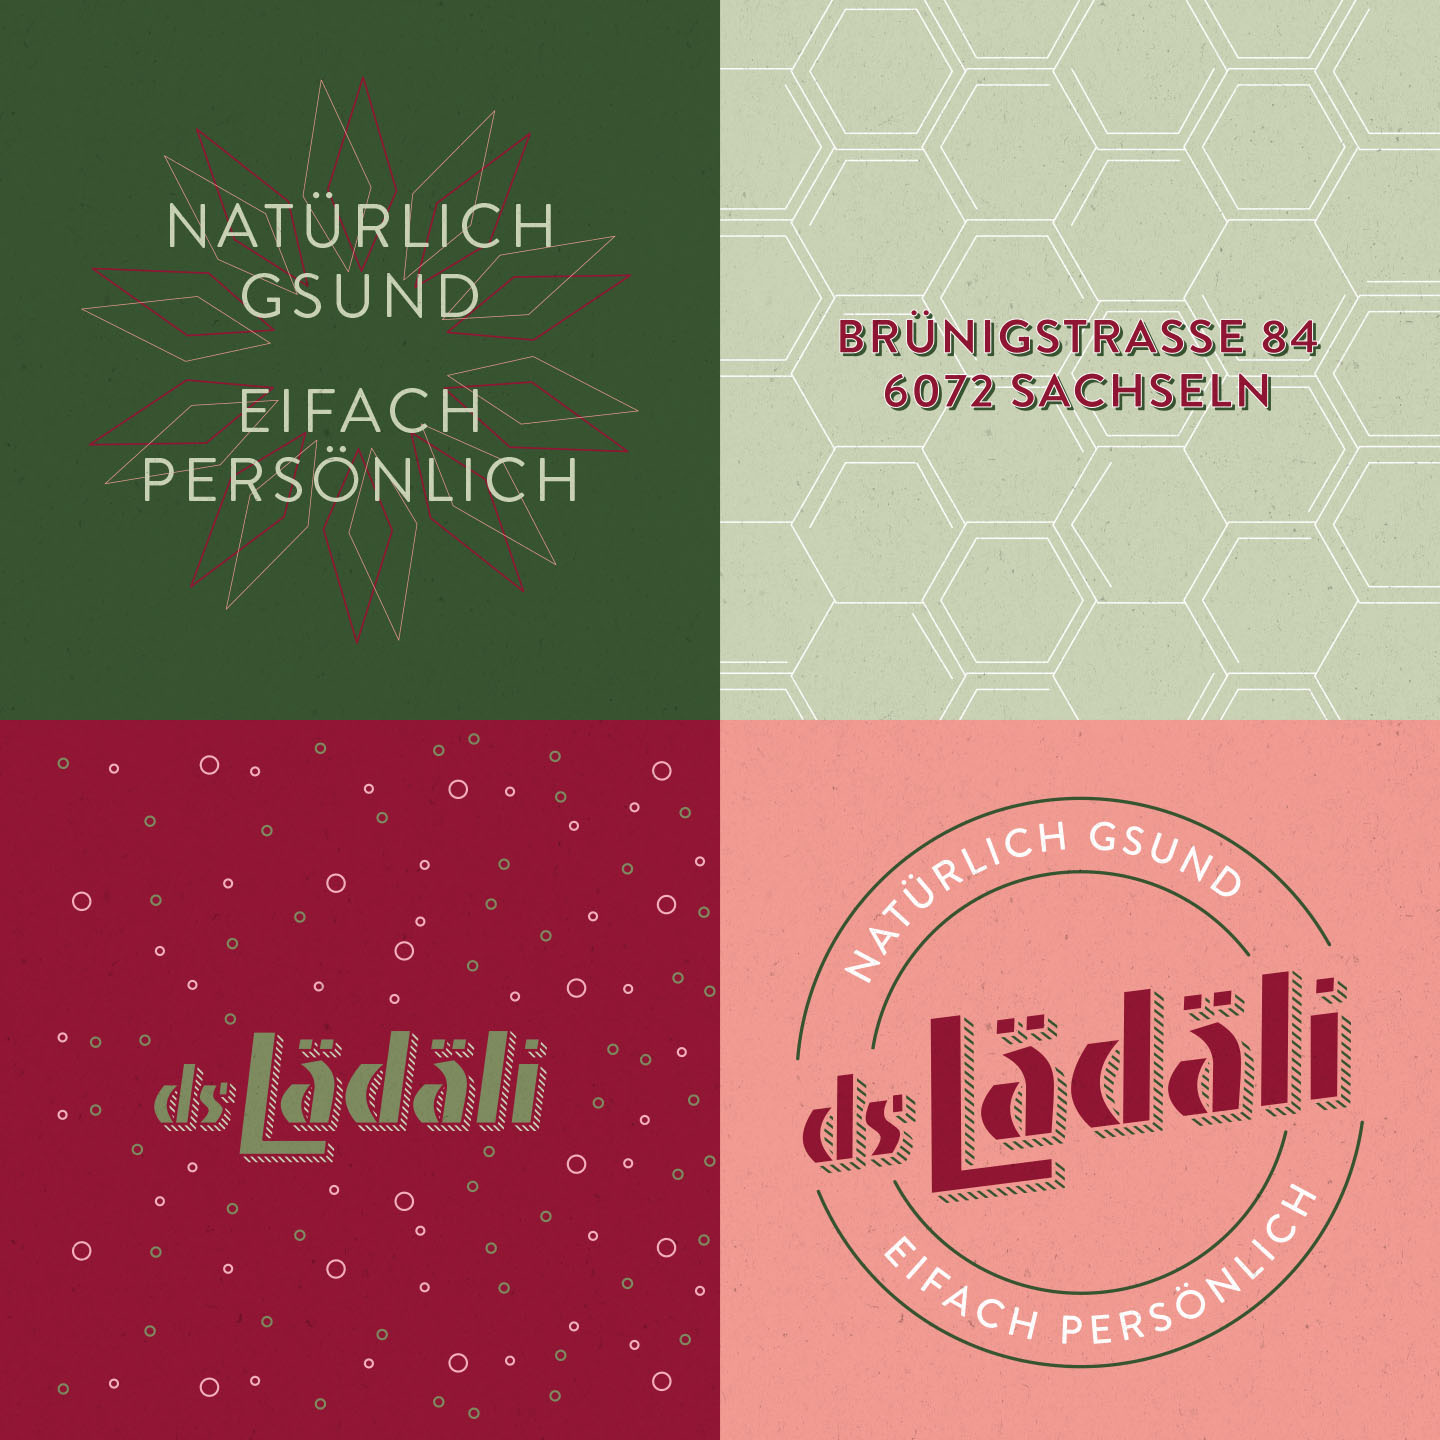 Design elements of ds Lädäli